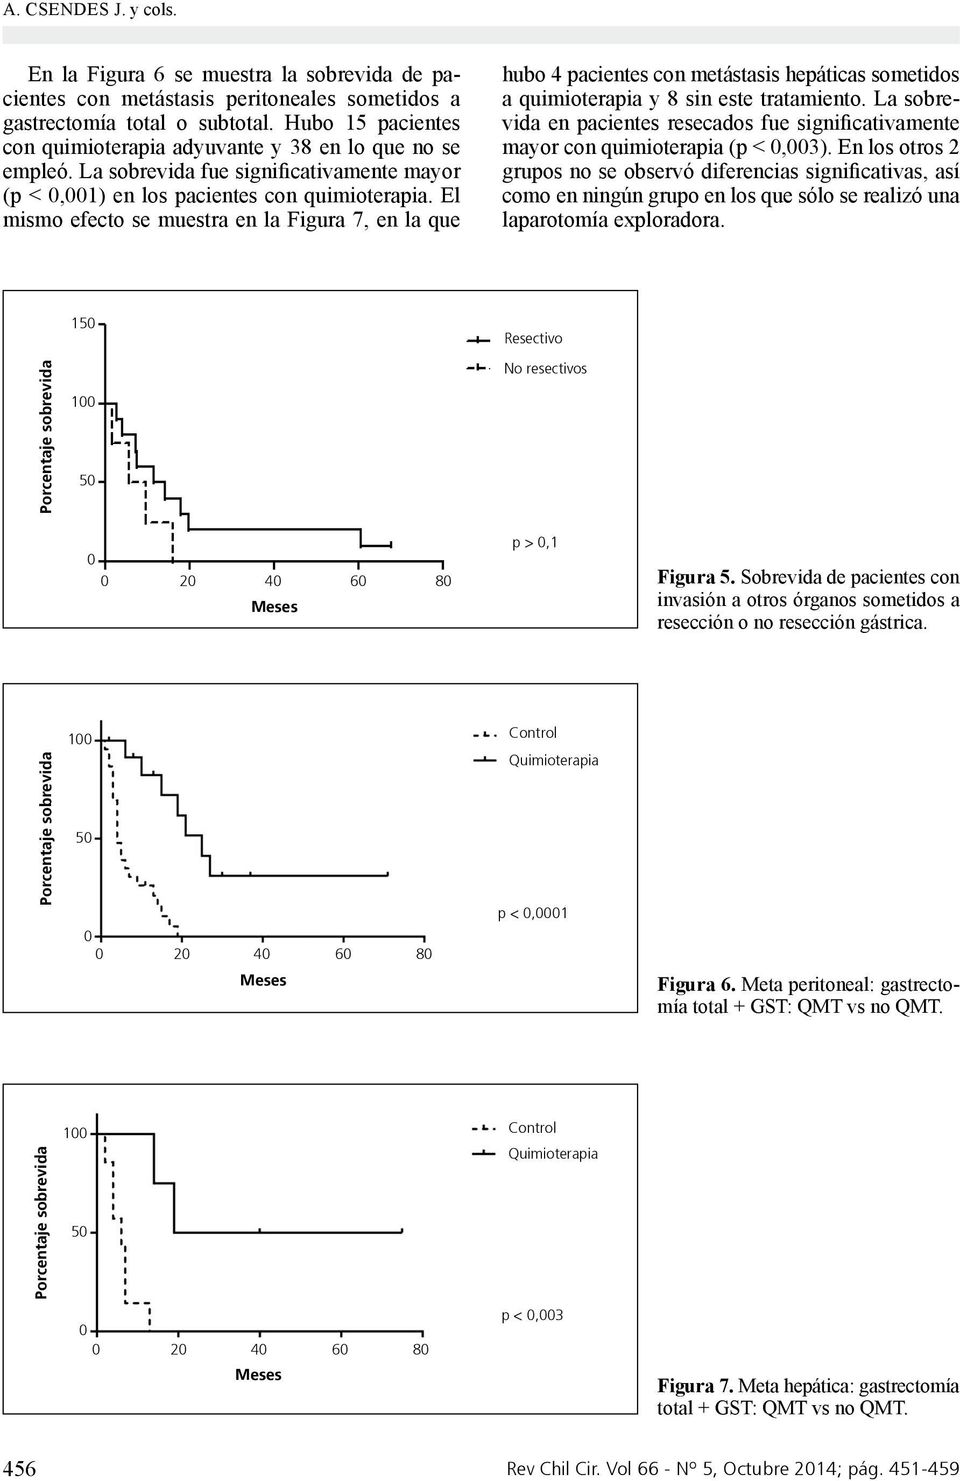 El mismo efecto se muestra en la Figura 7, en la que hubo 4 pacientes con metástasis hepáticas sometidos a quimioterapia y 8 sin este tratamiento.